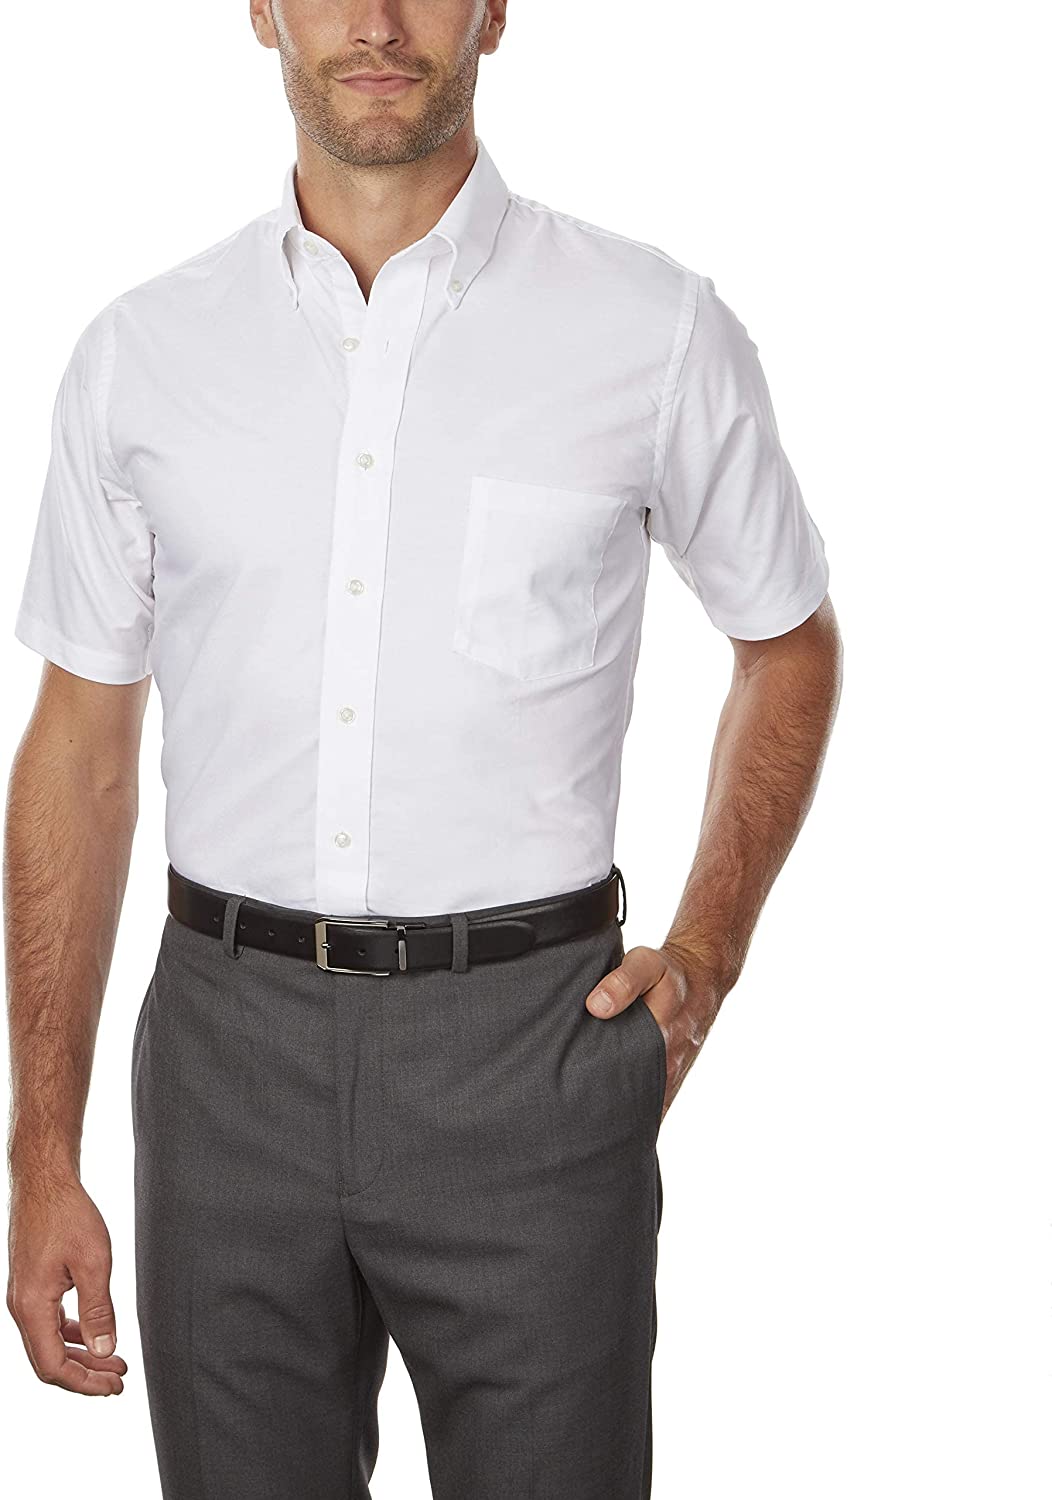 mens dress shirts short sleeve